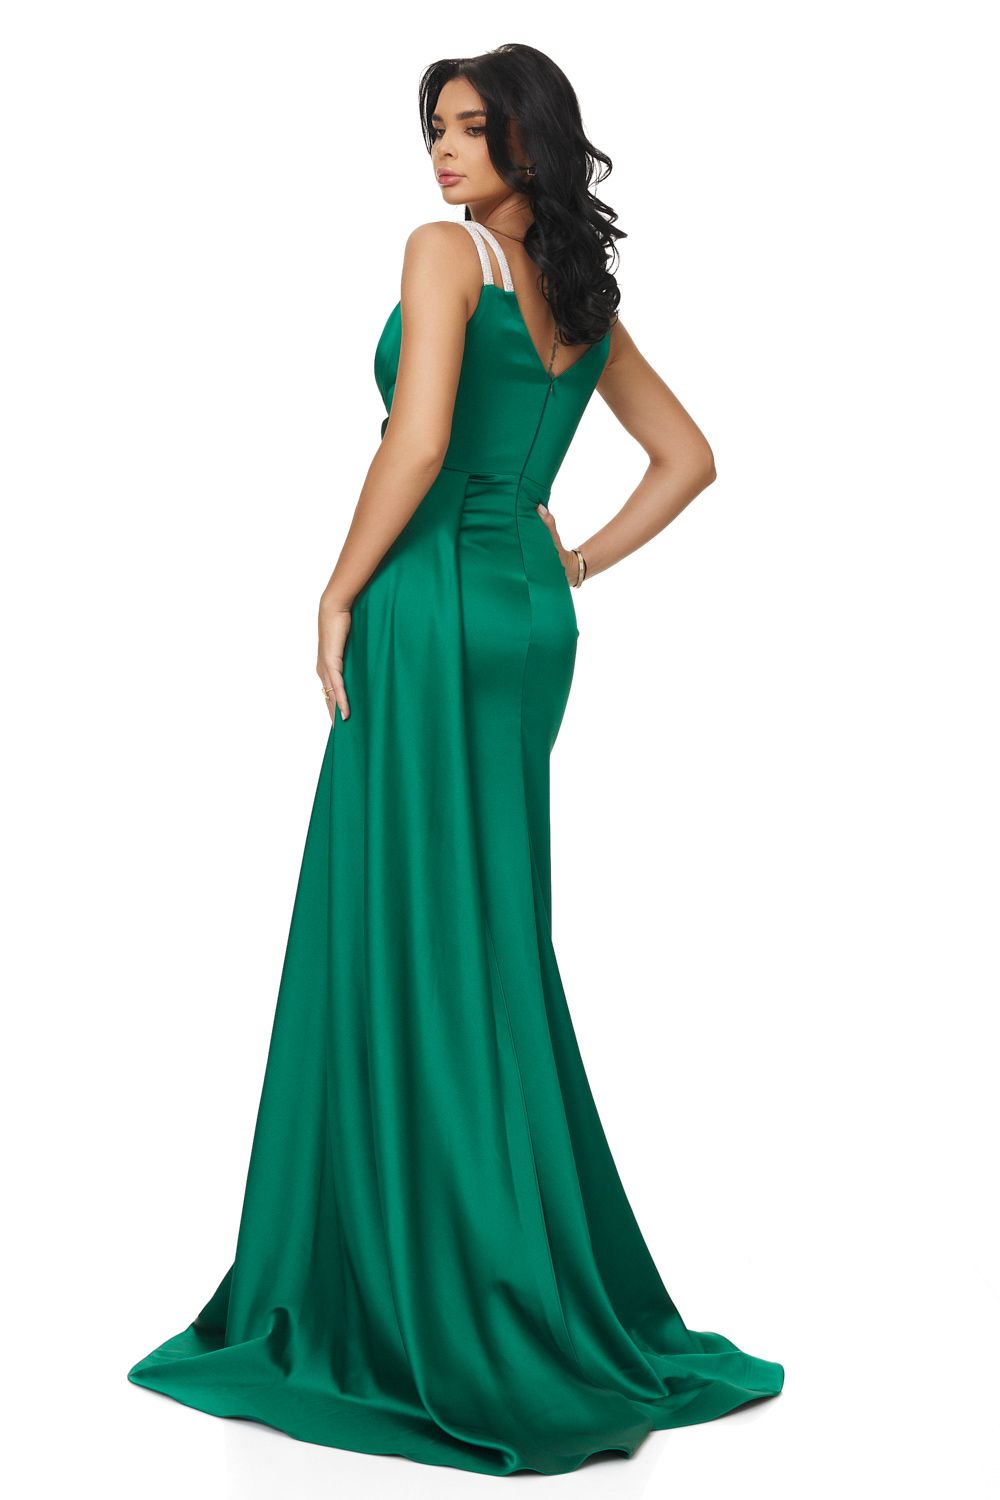 Olepy Bogas hosszú zöld női ruha